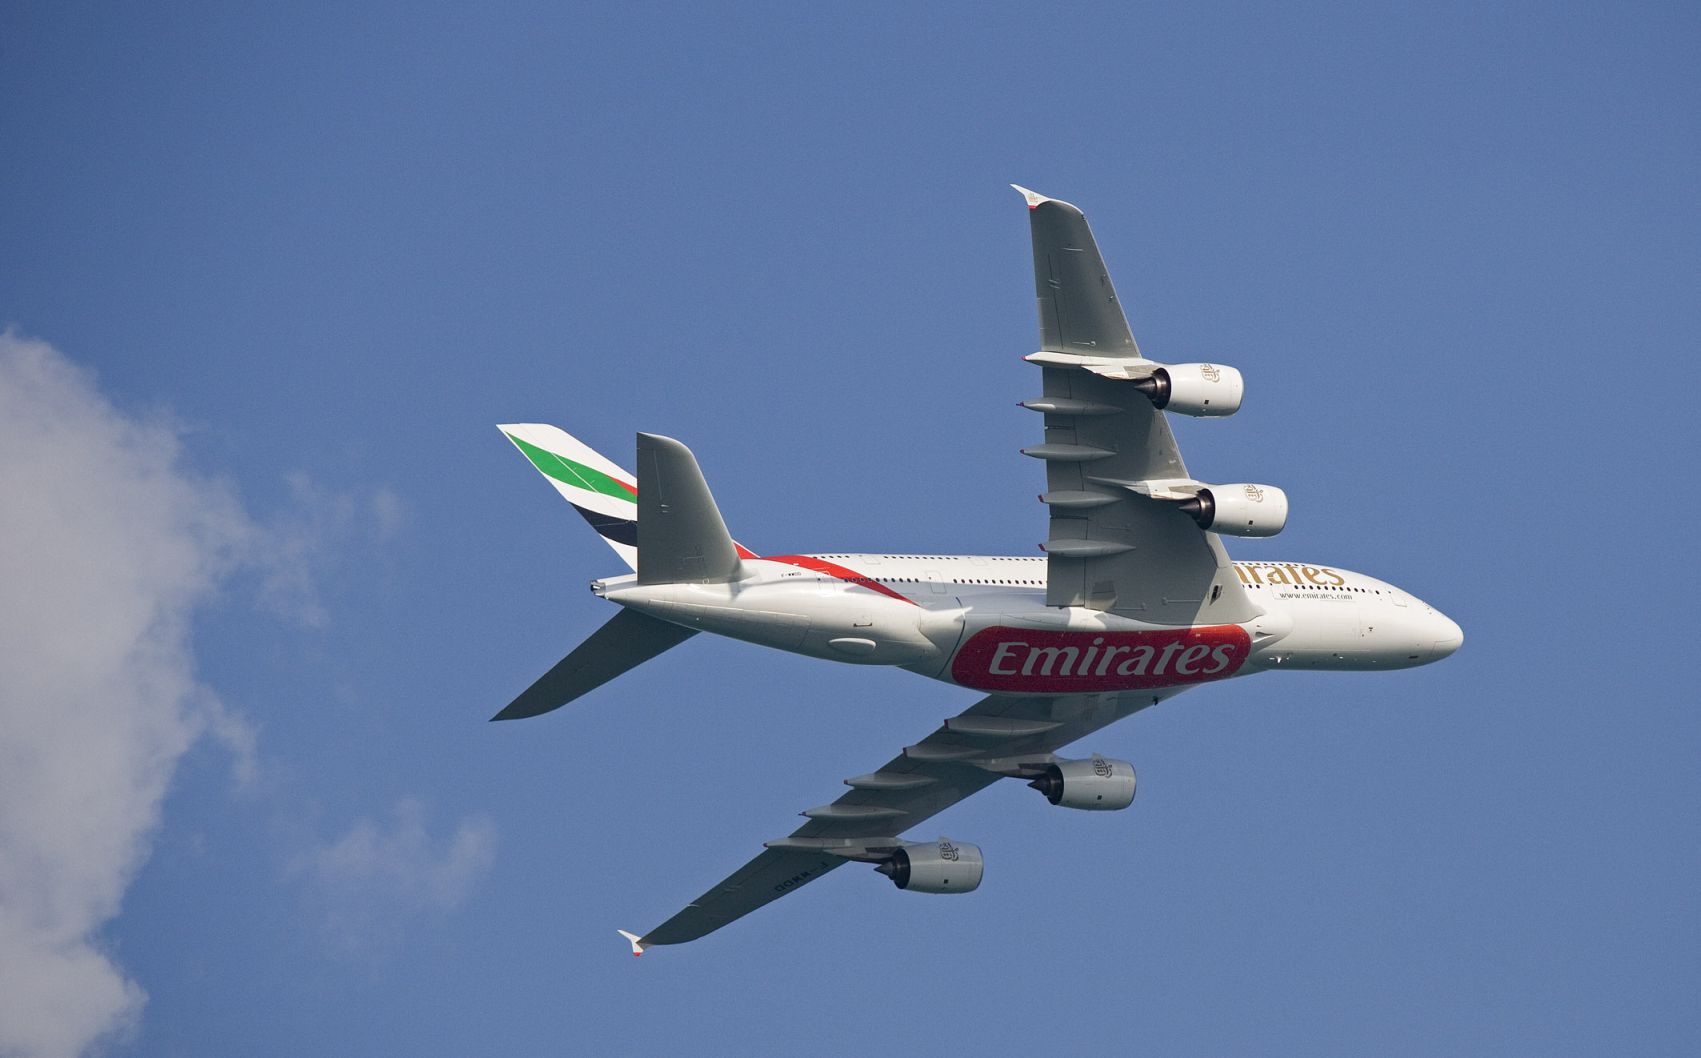 Az Emirates egyedül is beindítja a 380neo-programot?